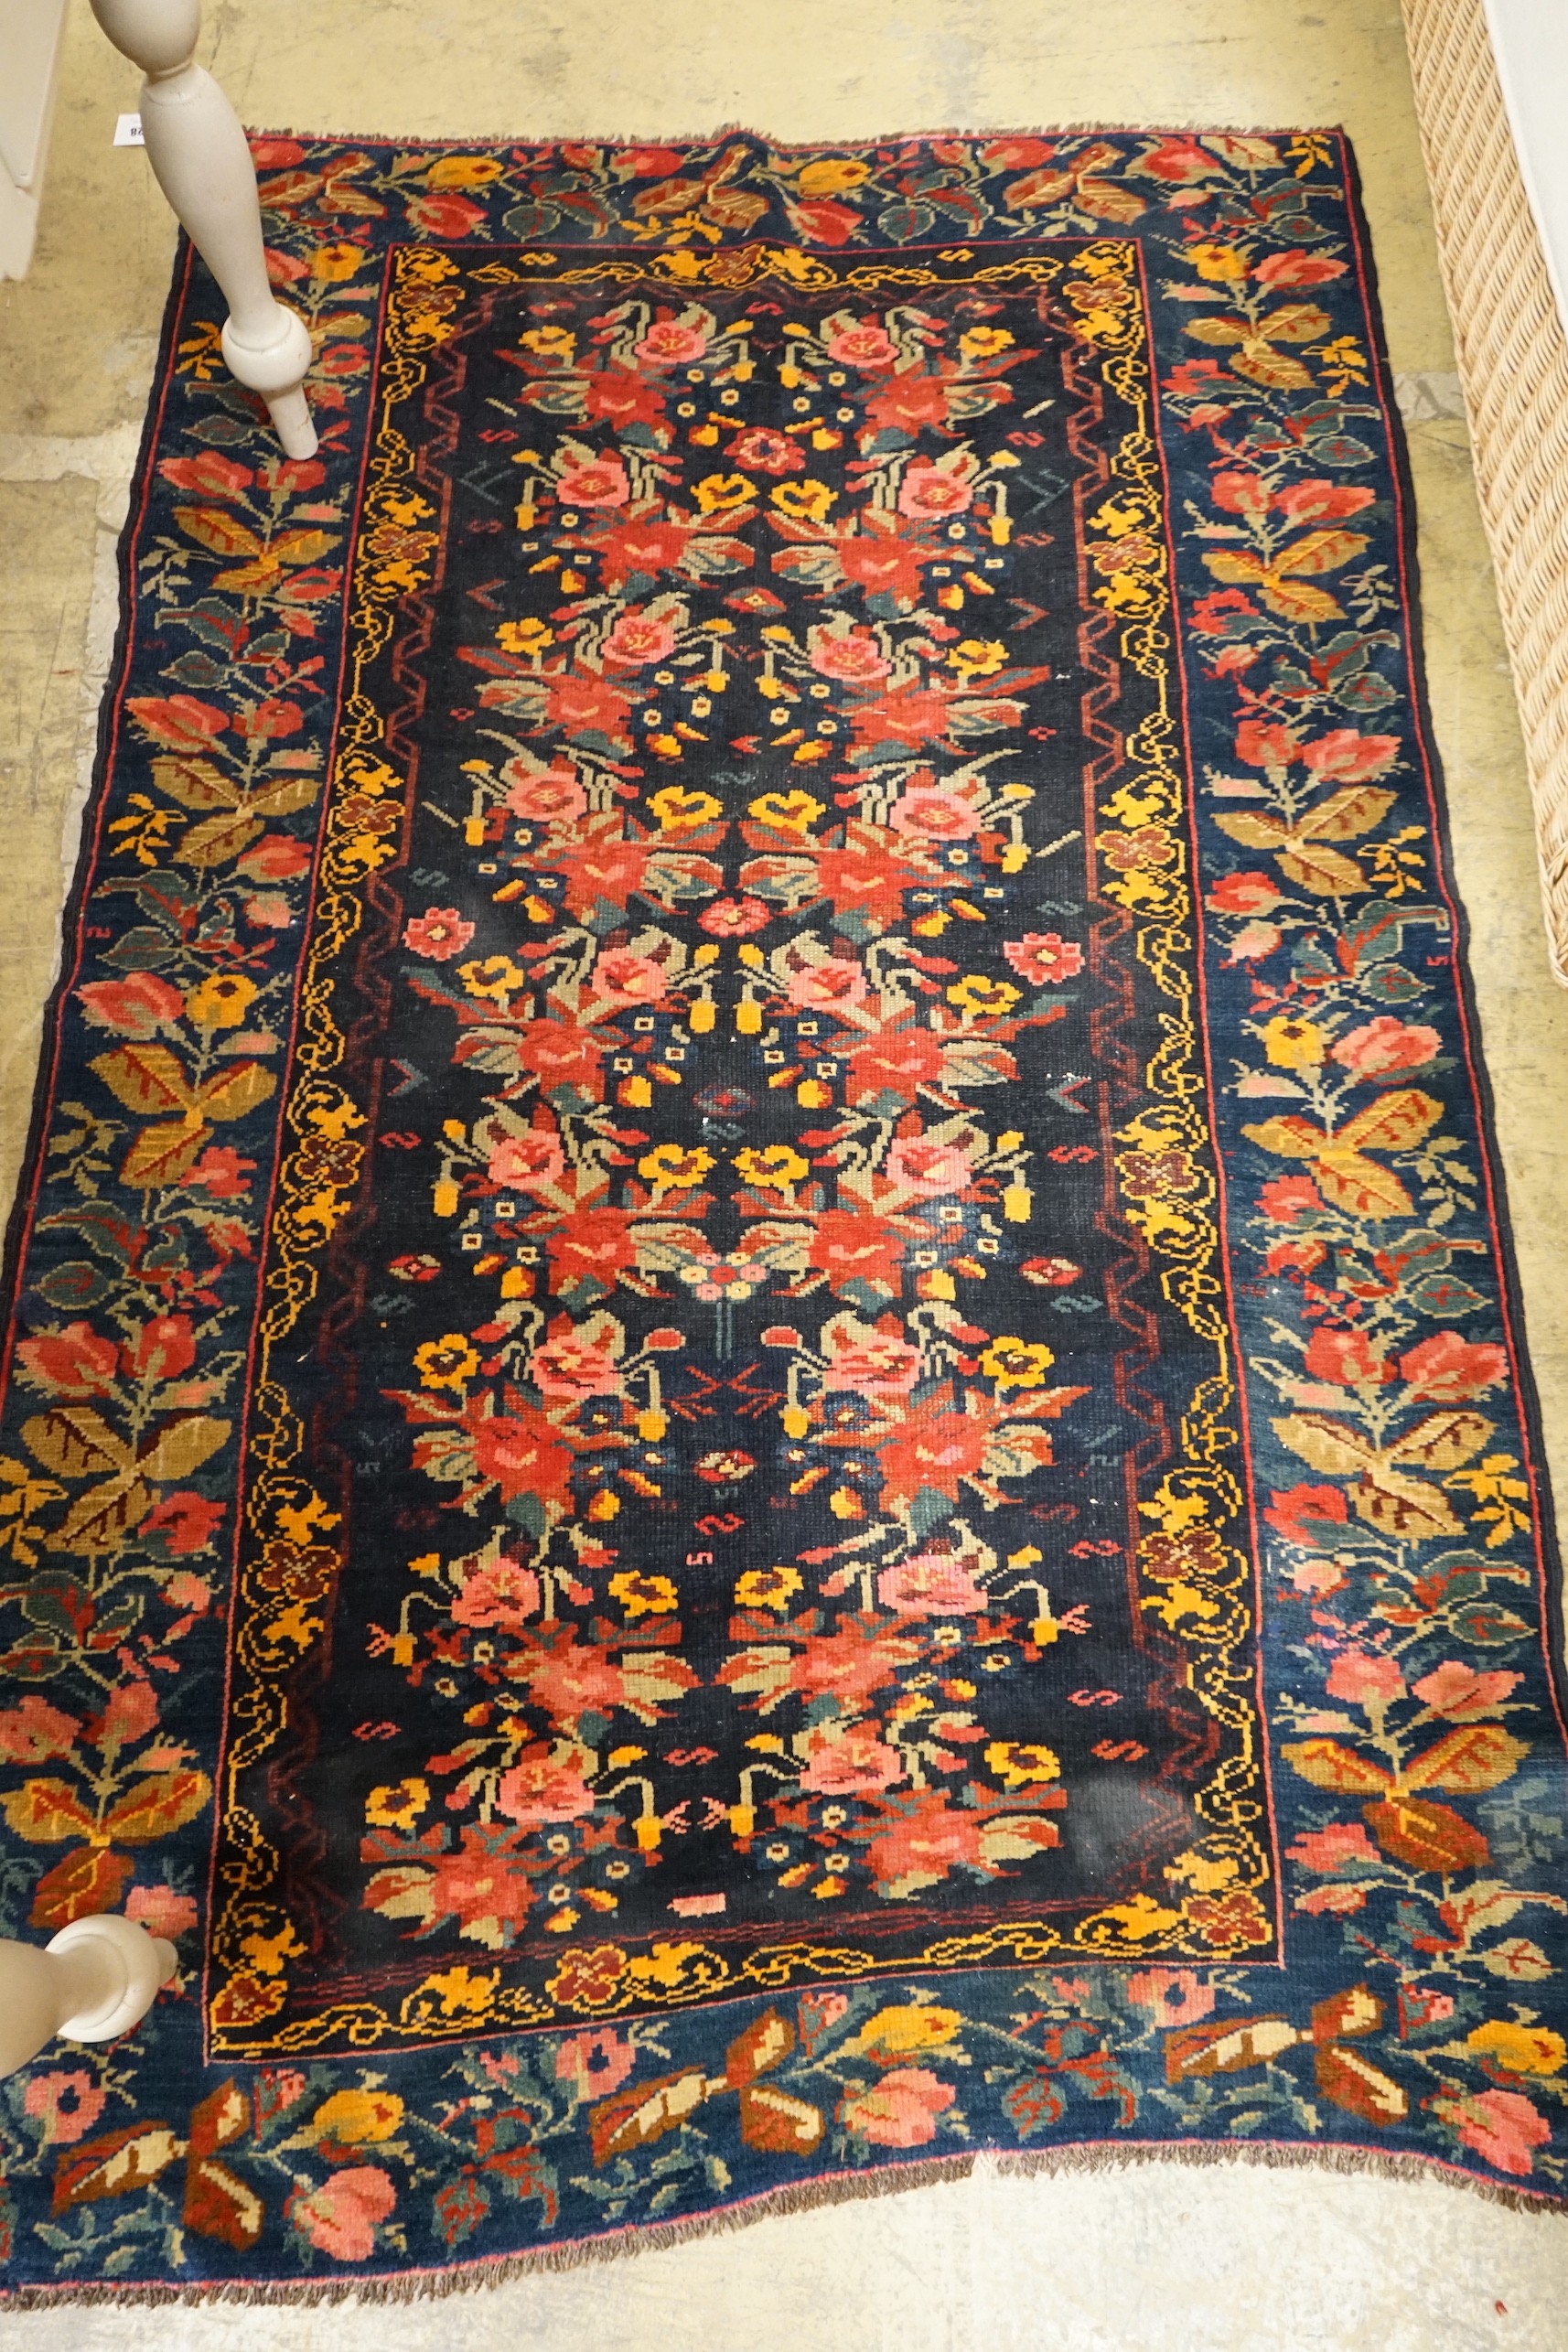 A Kirman style blue ground floral rug, 160 x 105cm